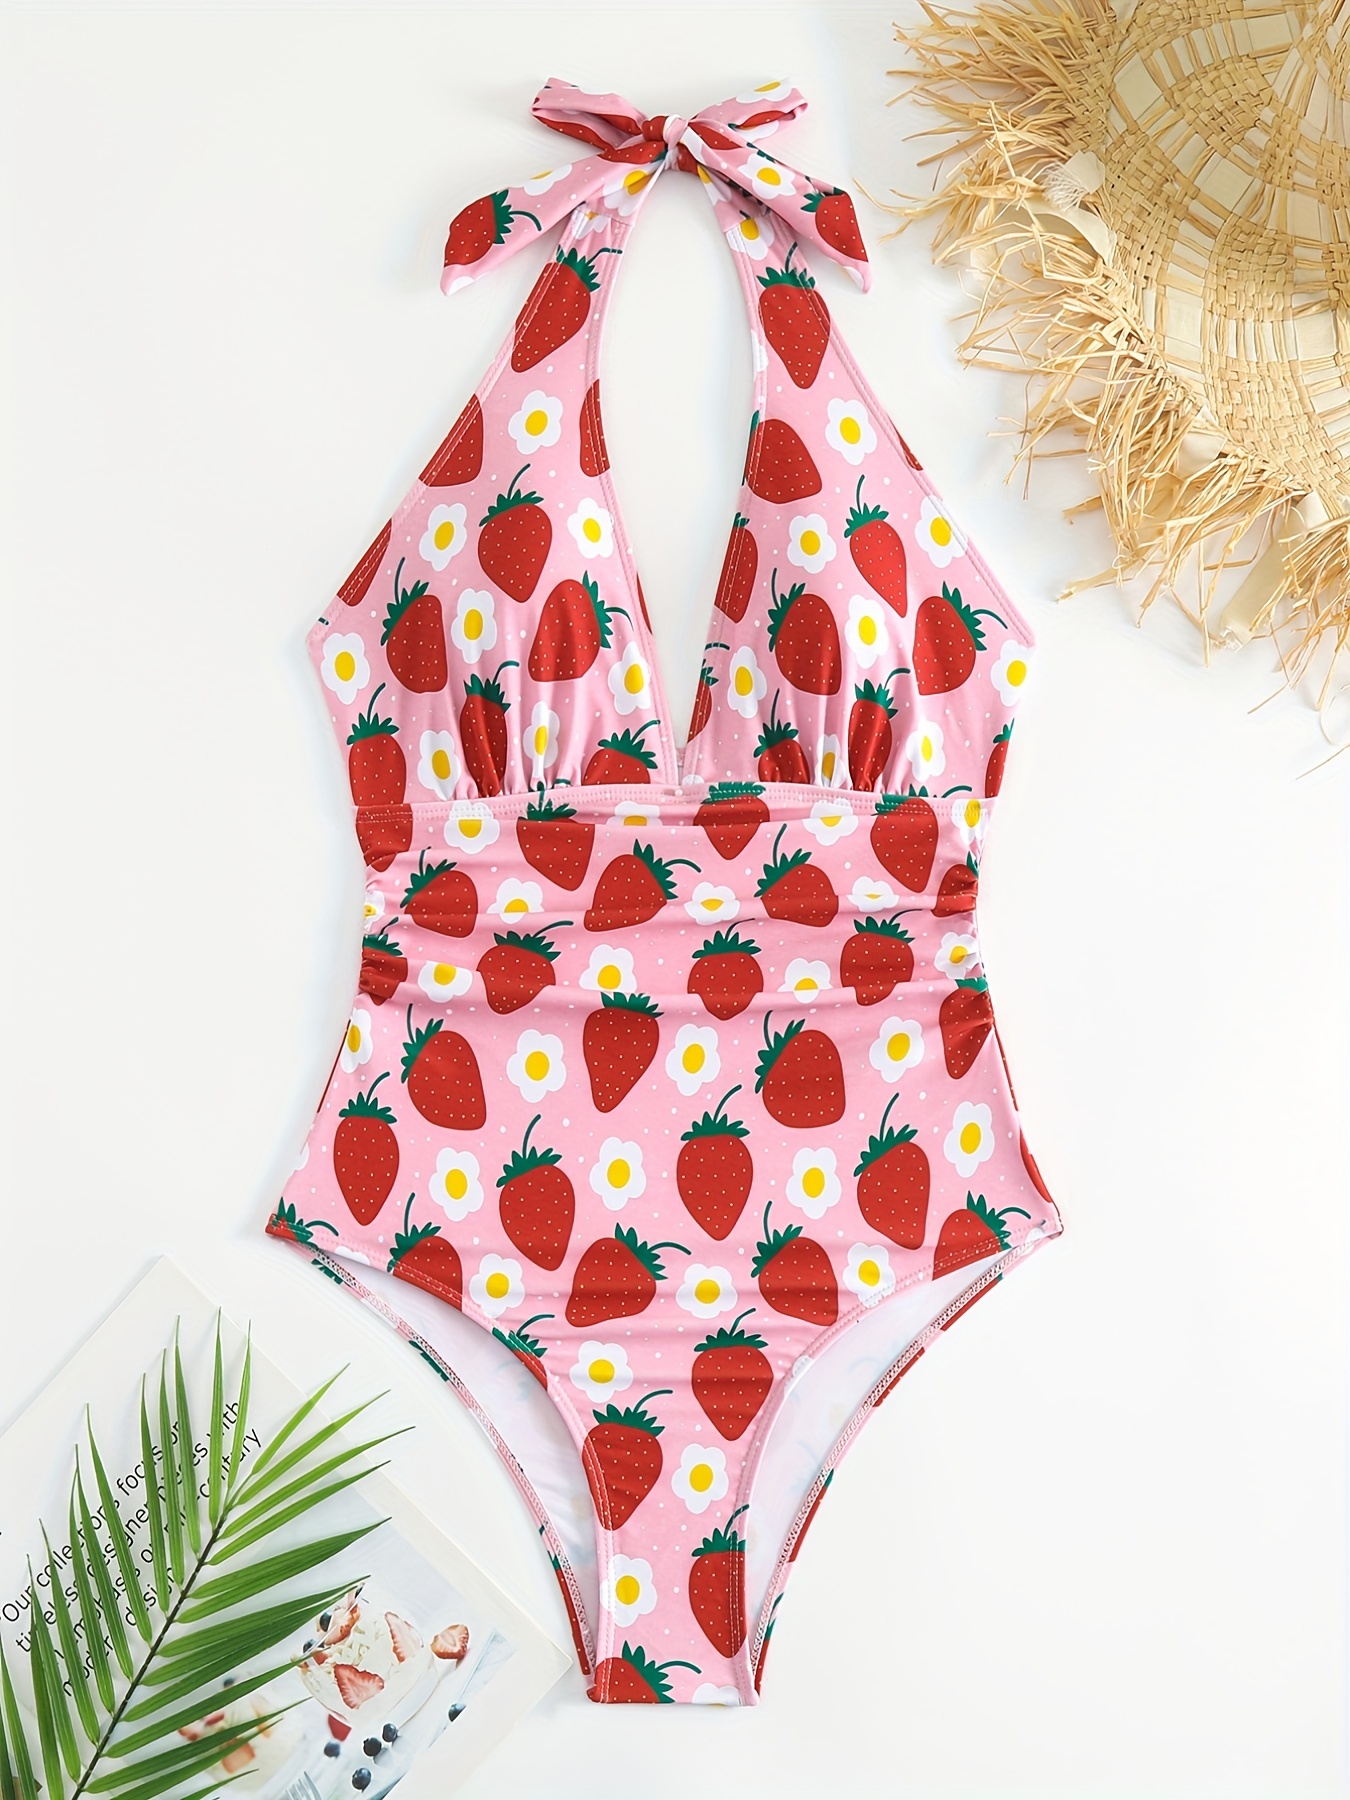 SEAUR Bathing Suit Girls One Piece Swimsuit Floral Print Cute